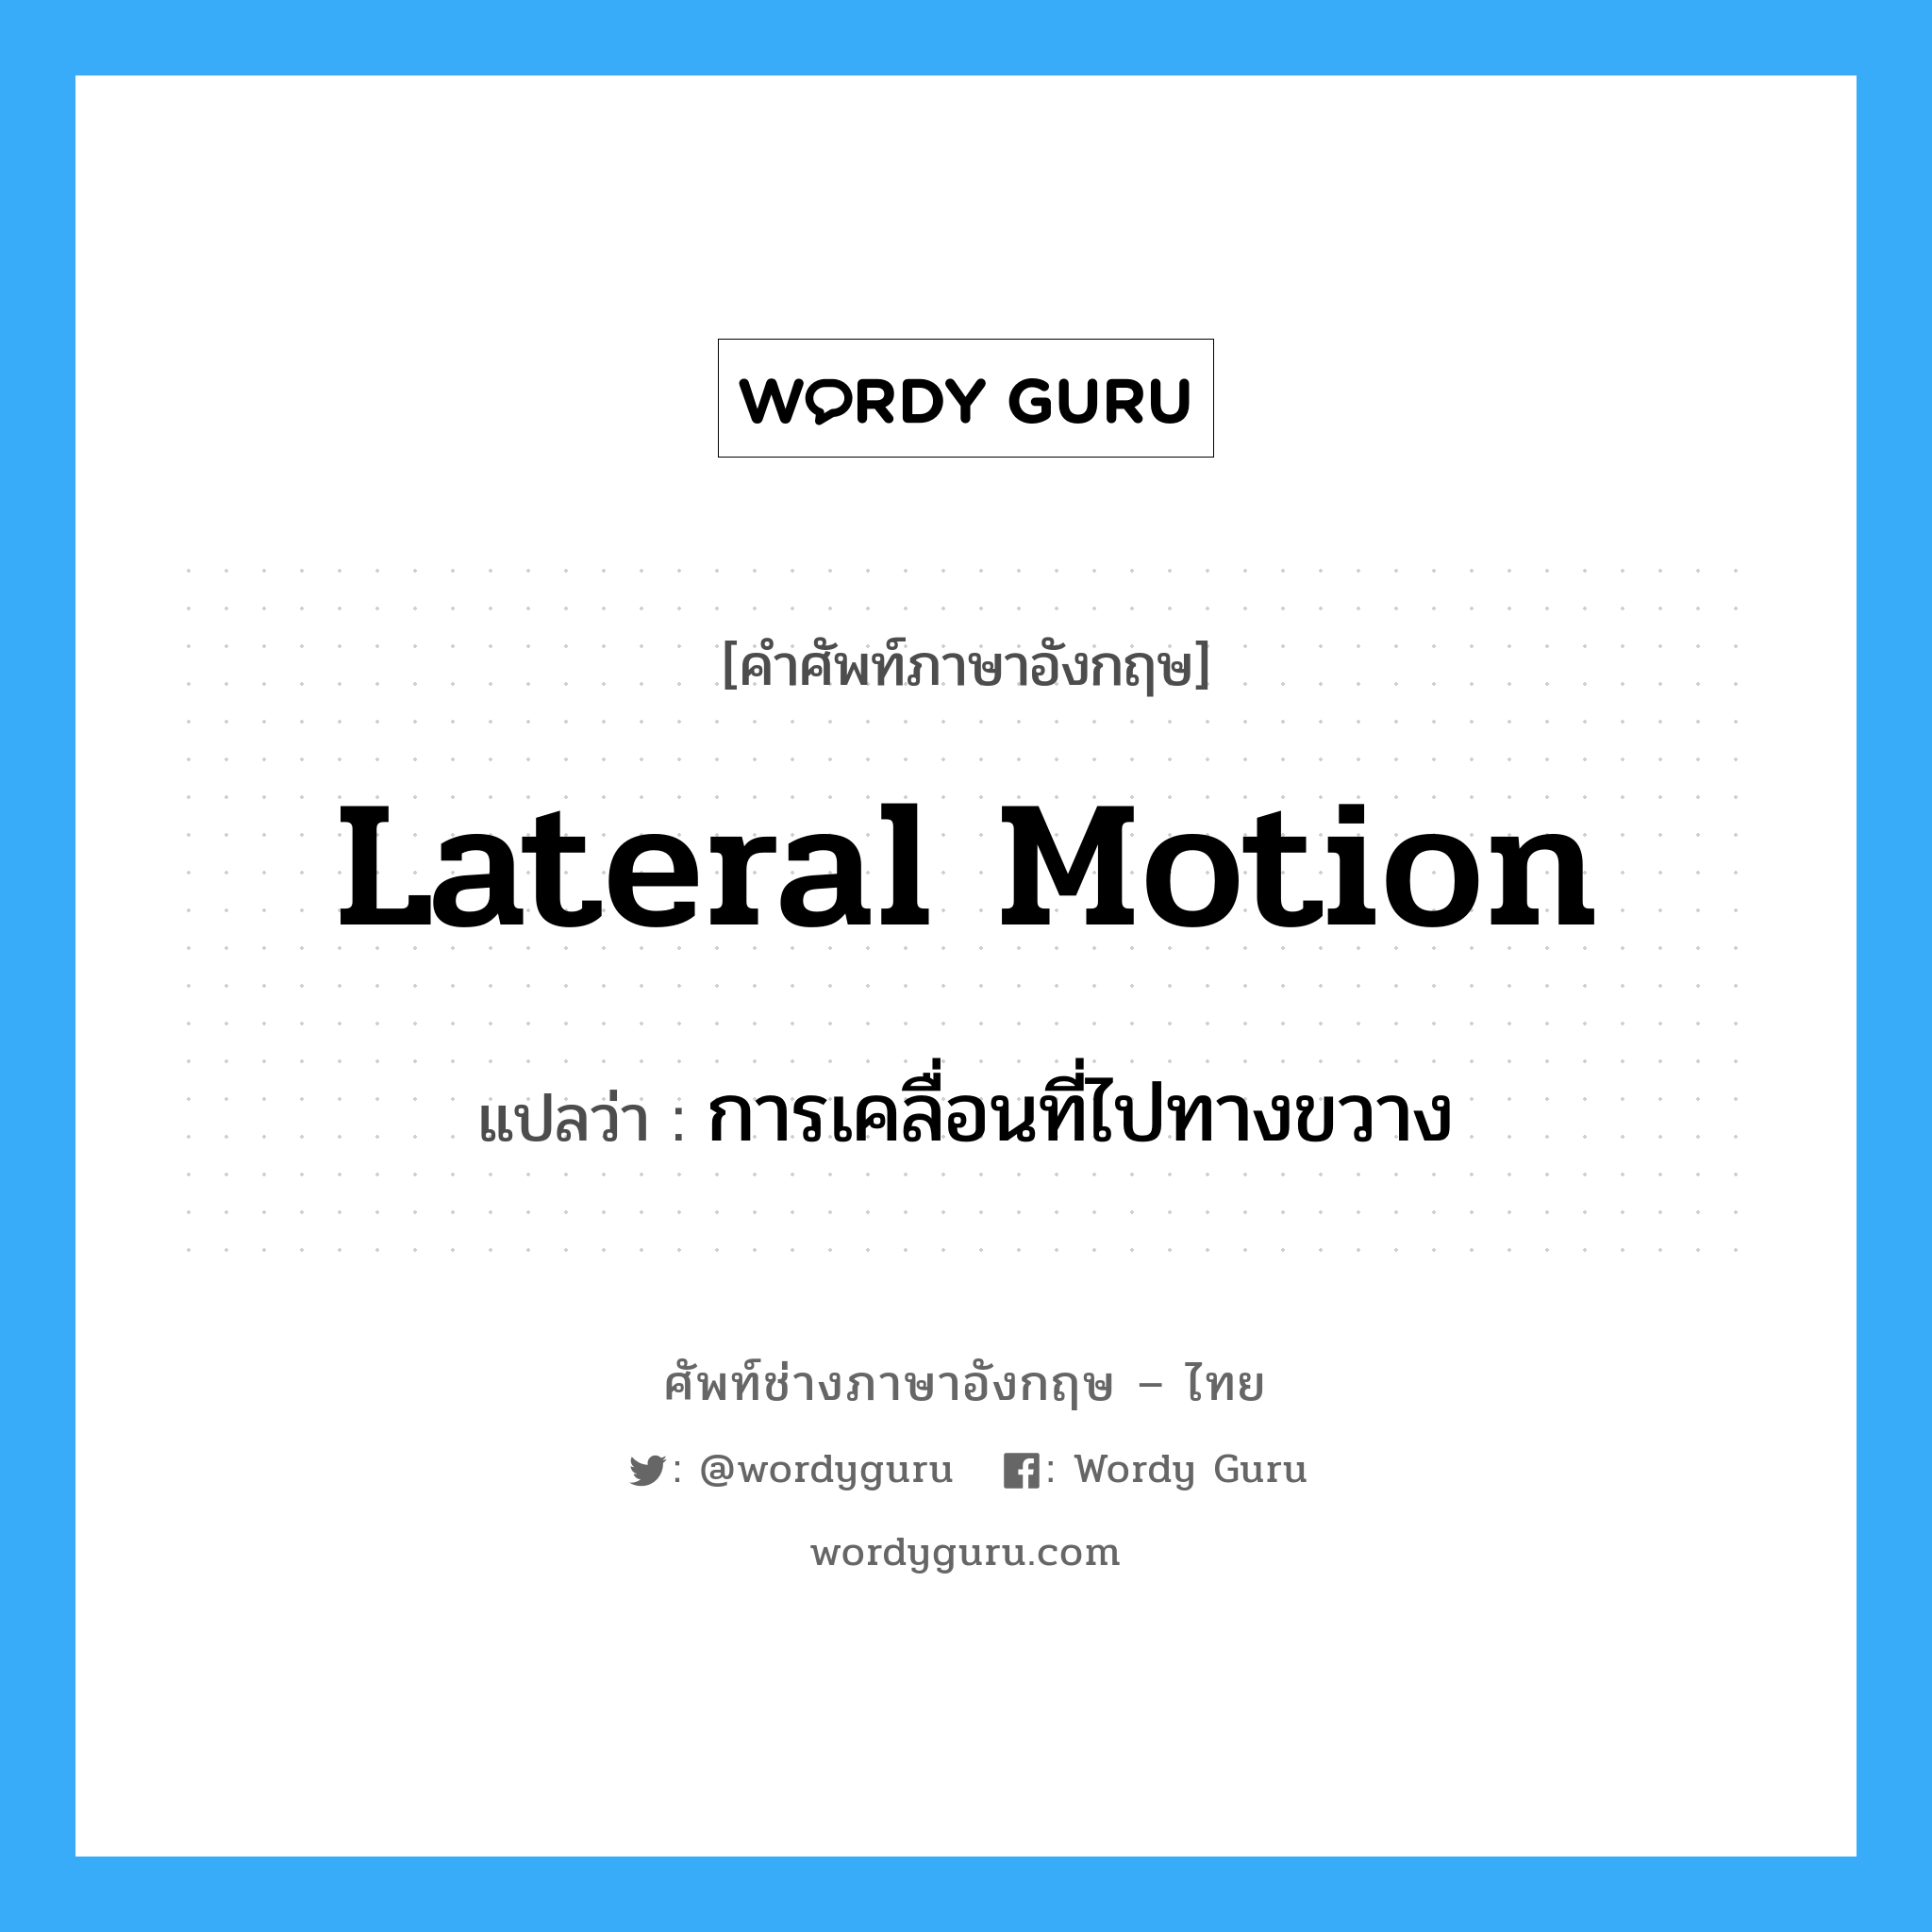 การเคลื่อนที่ไปทางขวาง ภาษาอังกฤษ?, คำศัพท์ช่างภาษาอังกฤษ - ไทย การเคลื่อนที่ไปทางขวาง คำศัพท์ภาษาอังกฤษ การเคลื่อนที่ไปทางขวาง แปลว่า lateral motion